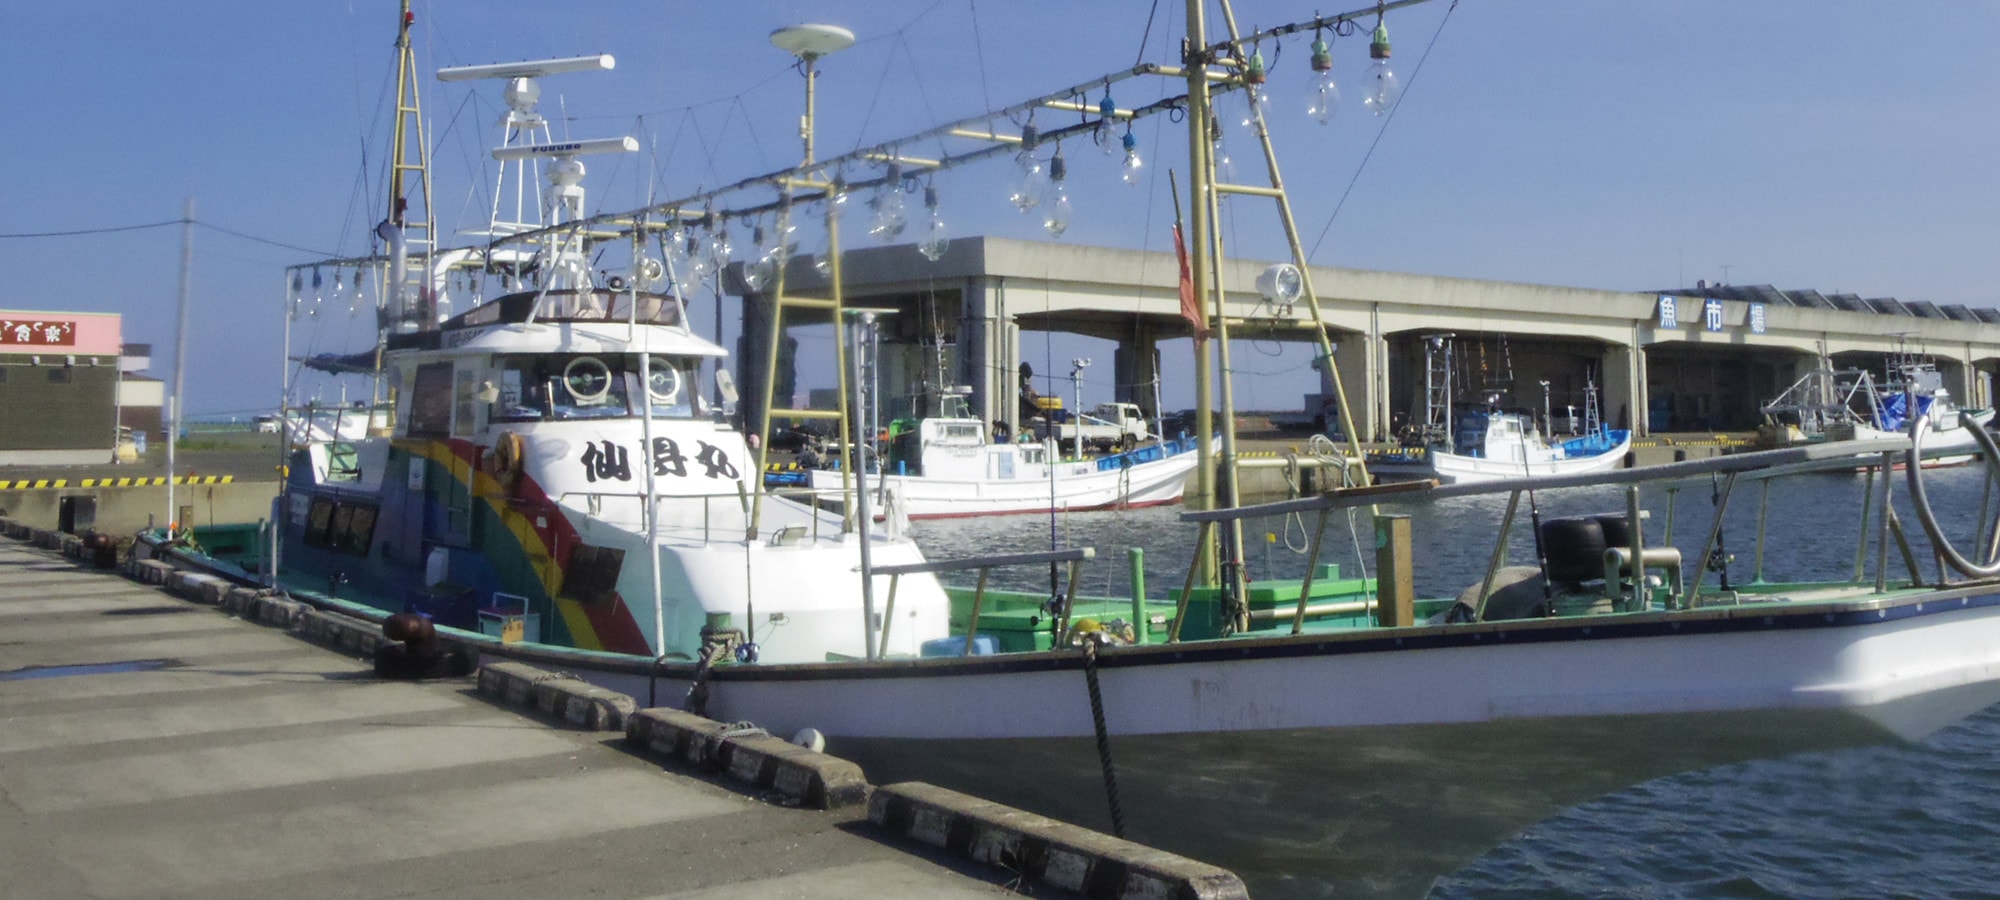 那珂湊の釣り船 仙昇丸 公式サイト 茨城県大洗 那珂湊エリアの釣り船